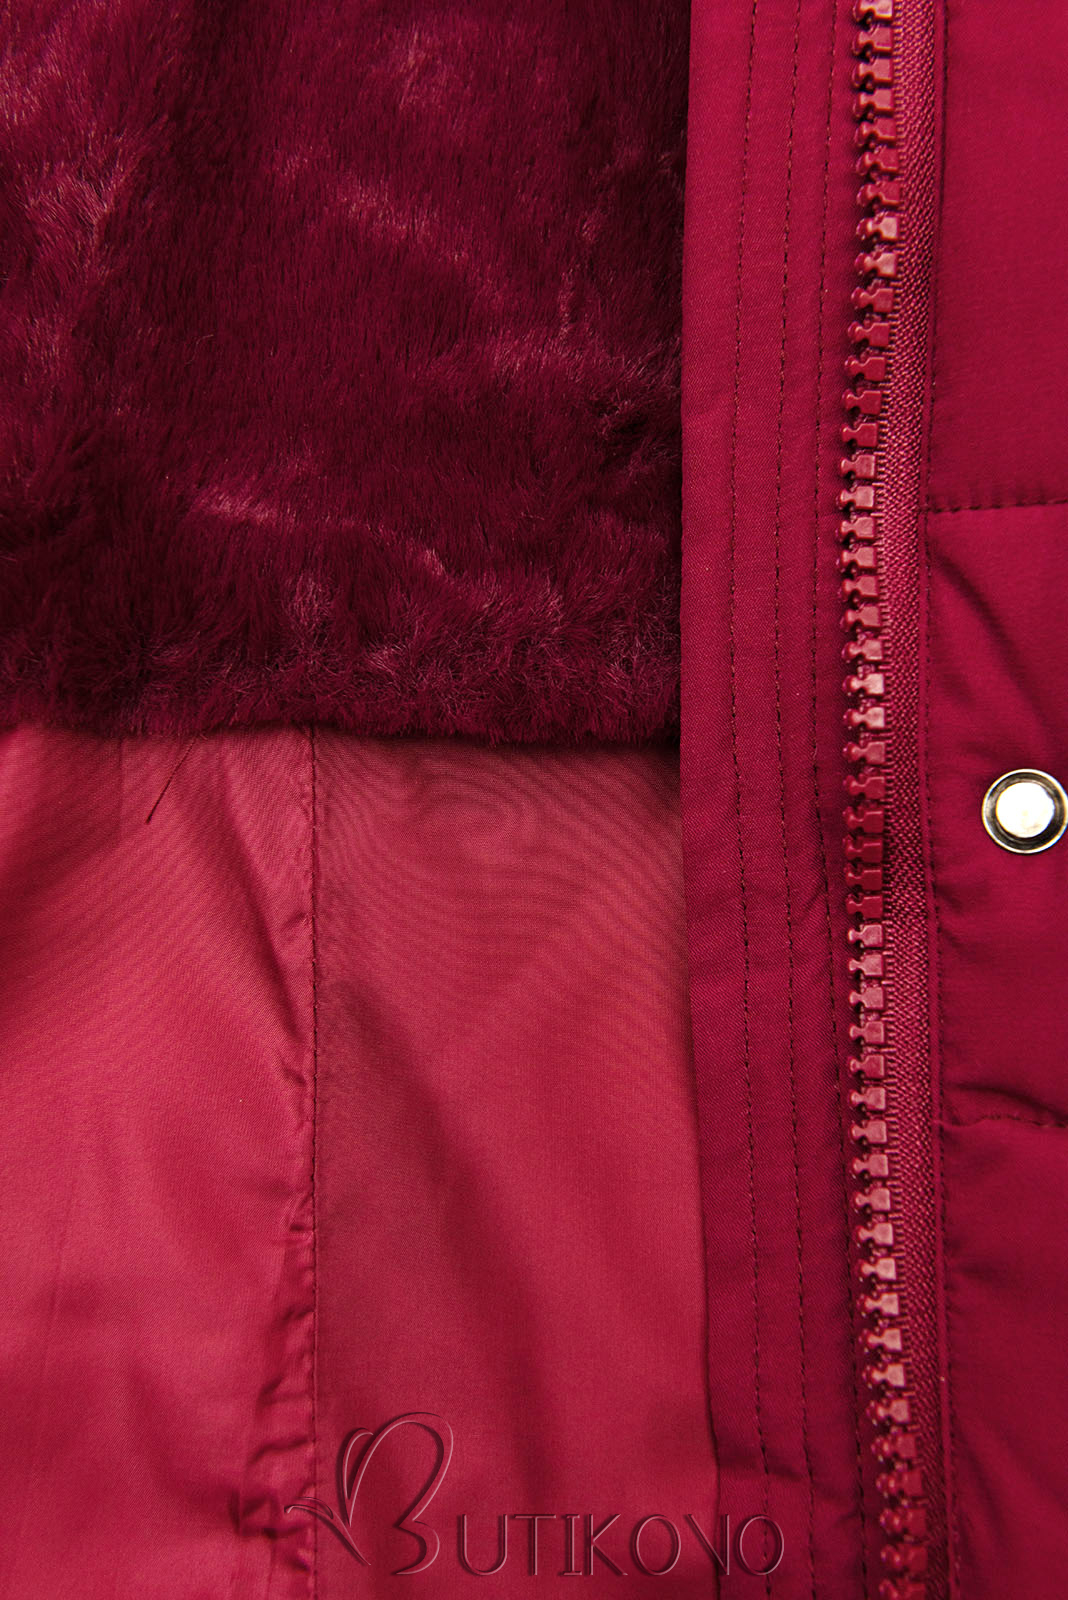 Teplá prošívaná bunda v burgundy barvě